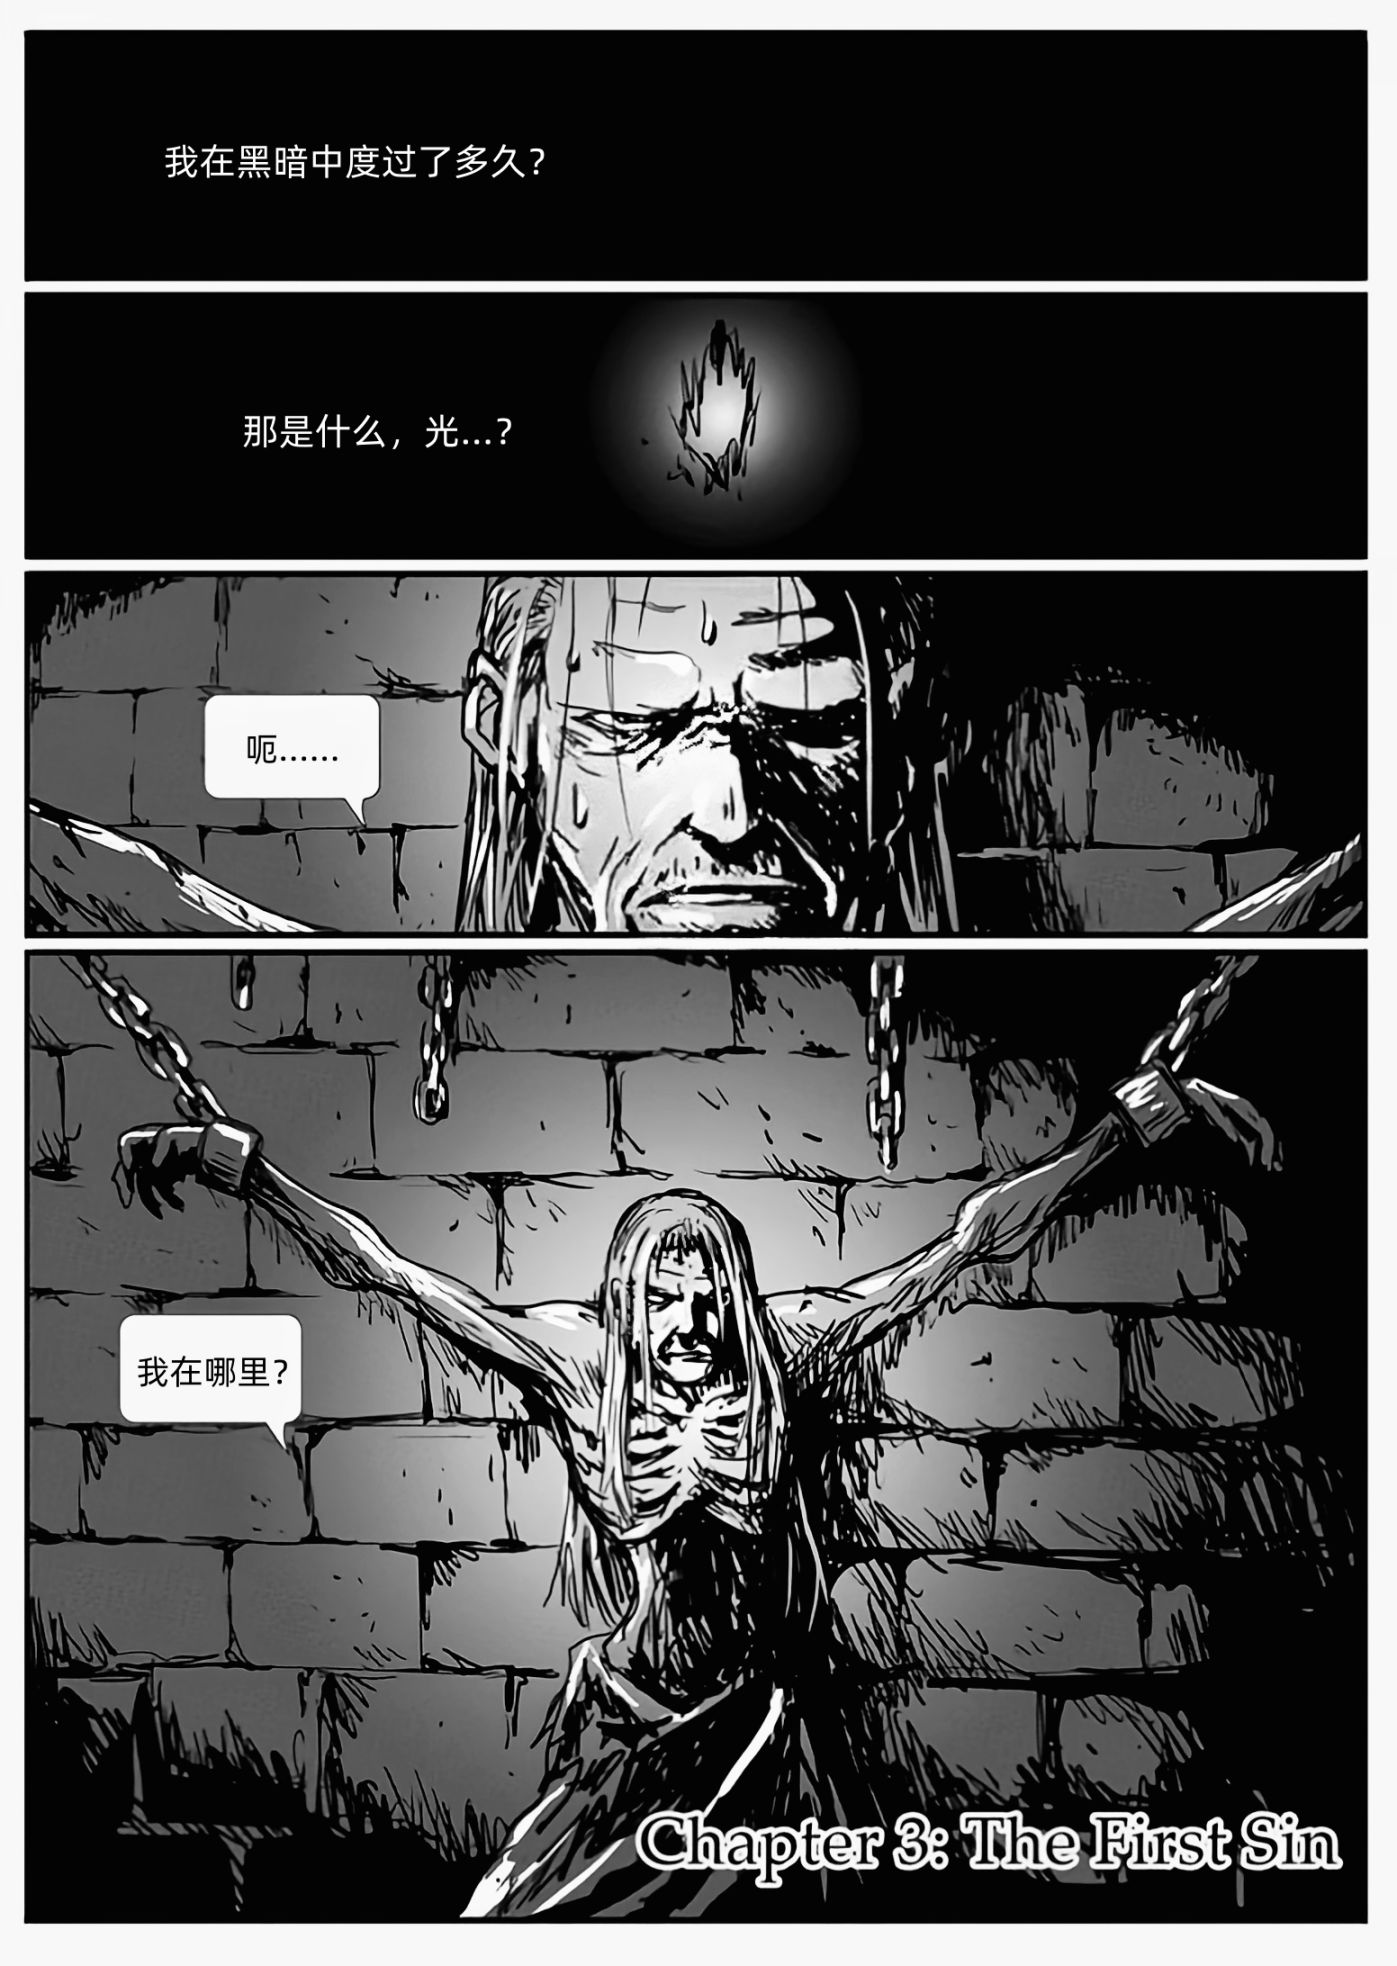 【漫畫】深淵漫步者（chap3原罪）-第1張